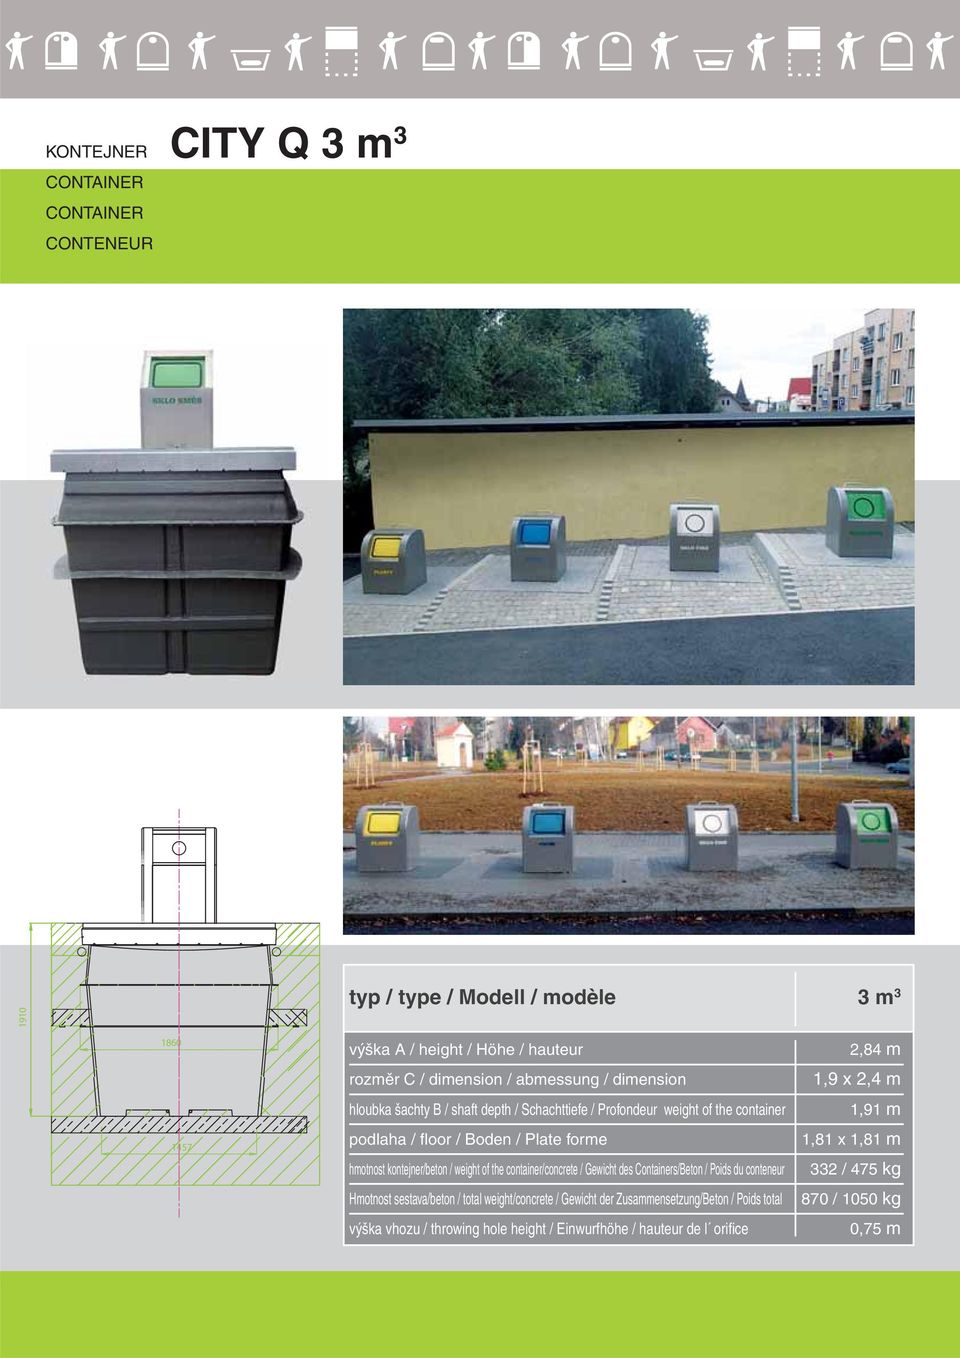 weight of the container/concrete / Gewicht des Containers/Beton / Poids du conteneur Hmotnost sestava/beton / total weight/concrete / Gewicht der